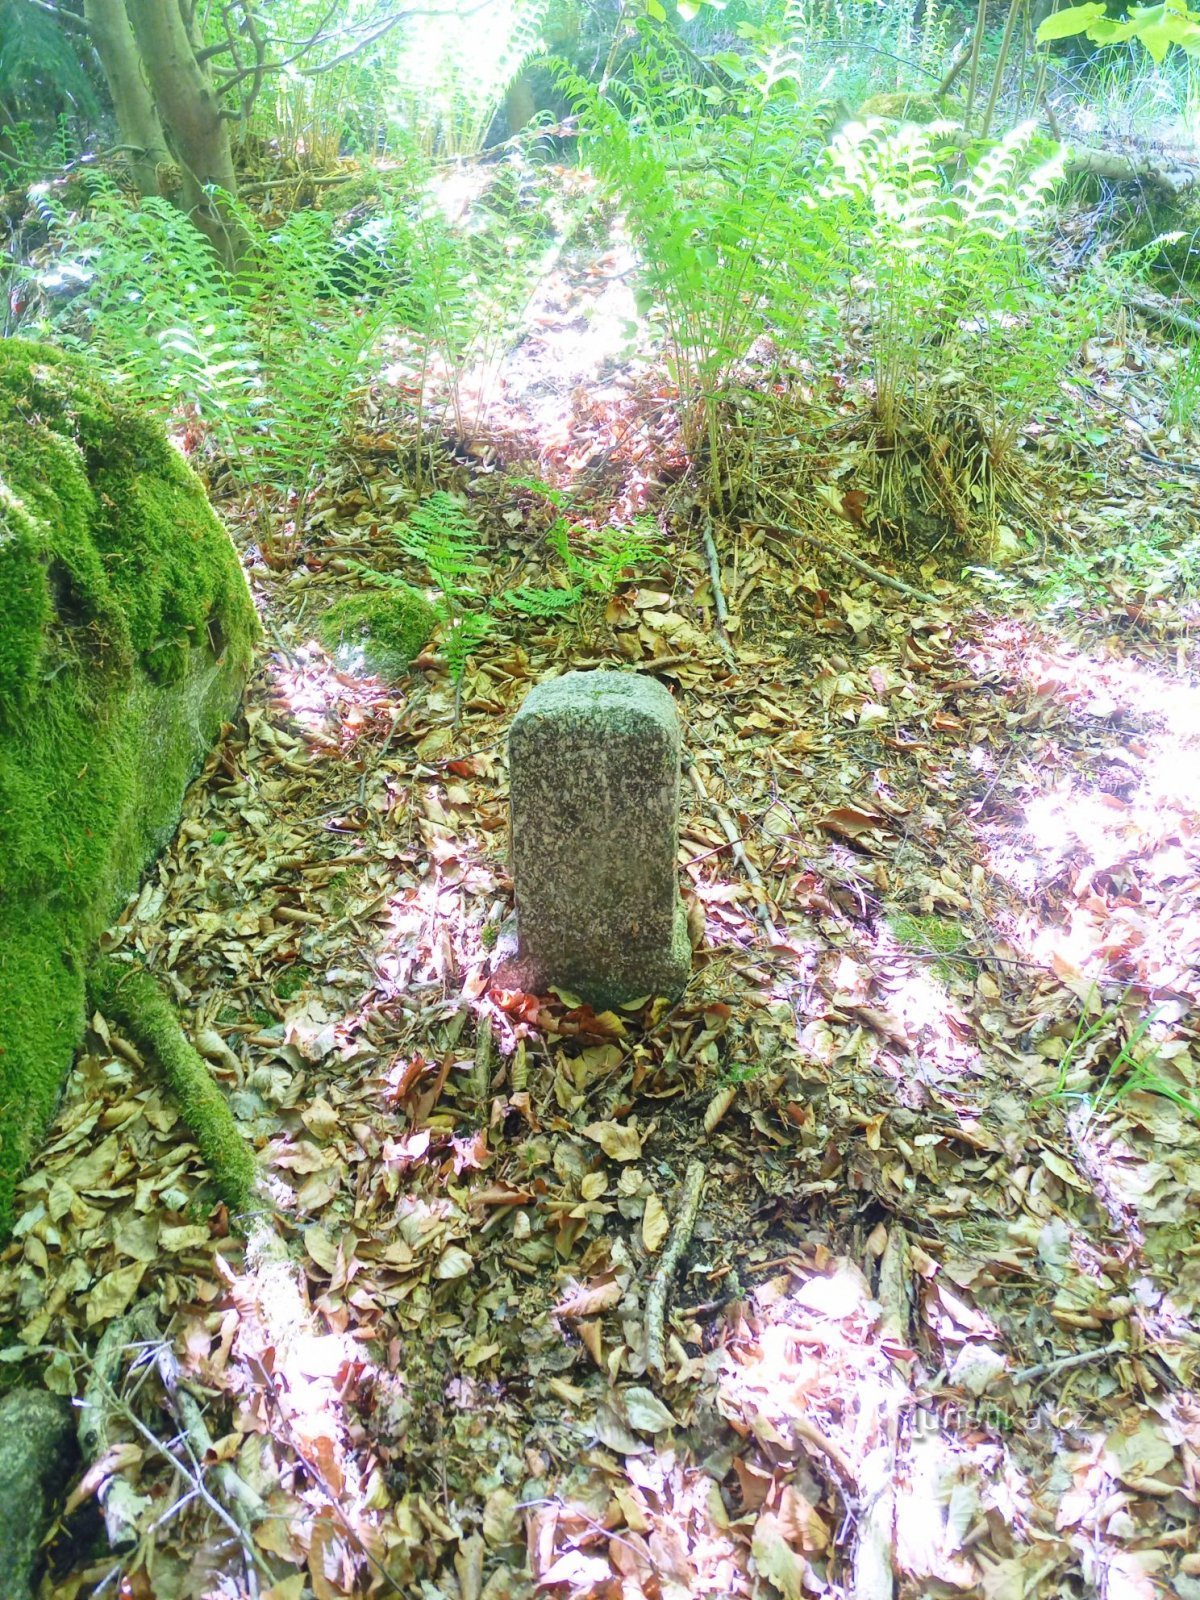 3. Egy kőből készült tereptárgy az erdőben vésett kereszttel